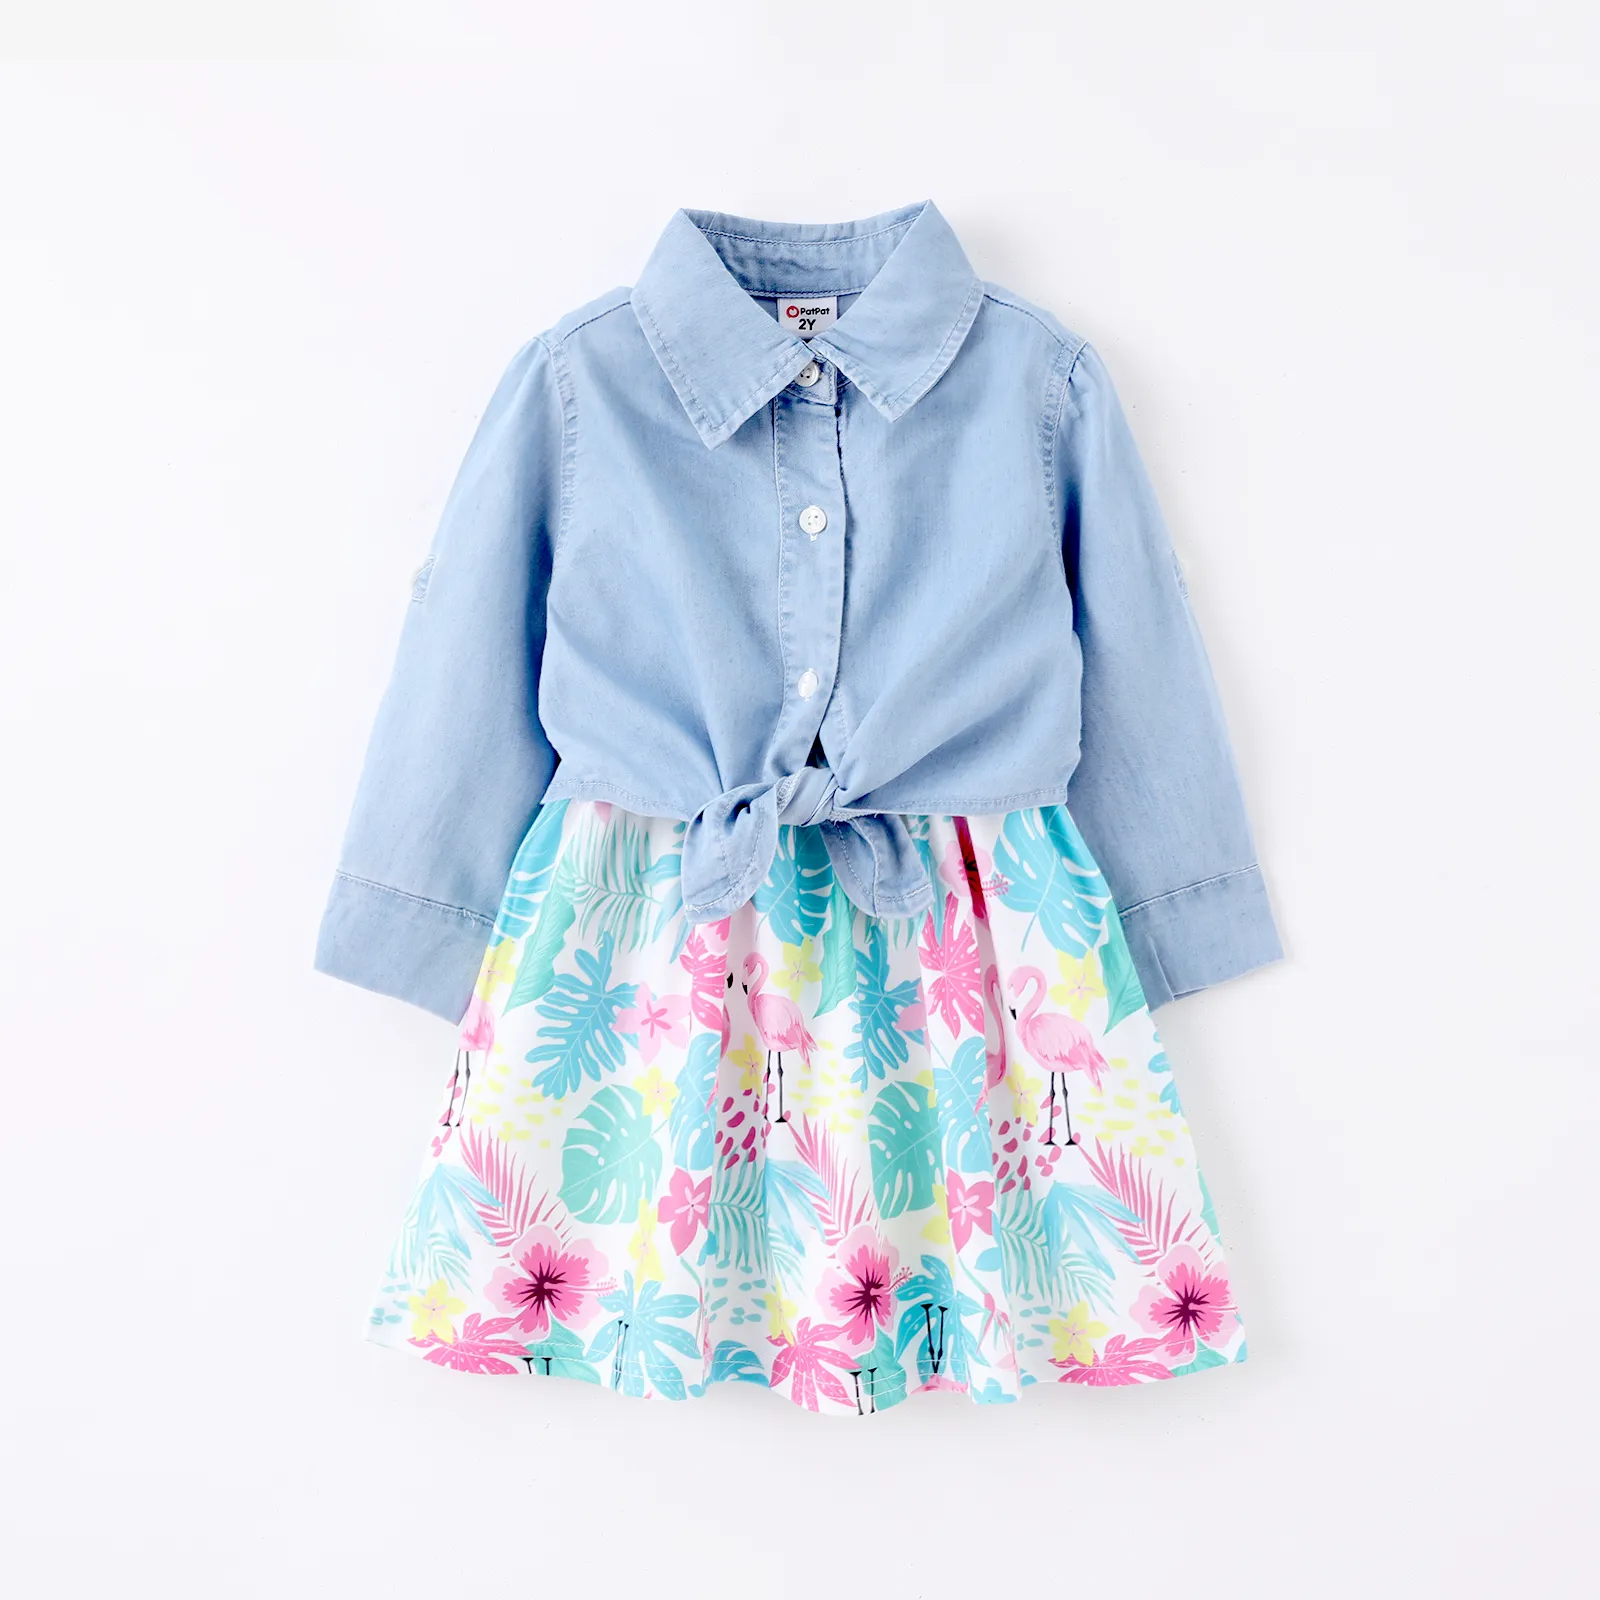 Toddler Girl 2pcs Cooling Denim Shirt and Floral Print Cami Dress Set